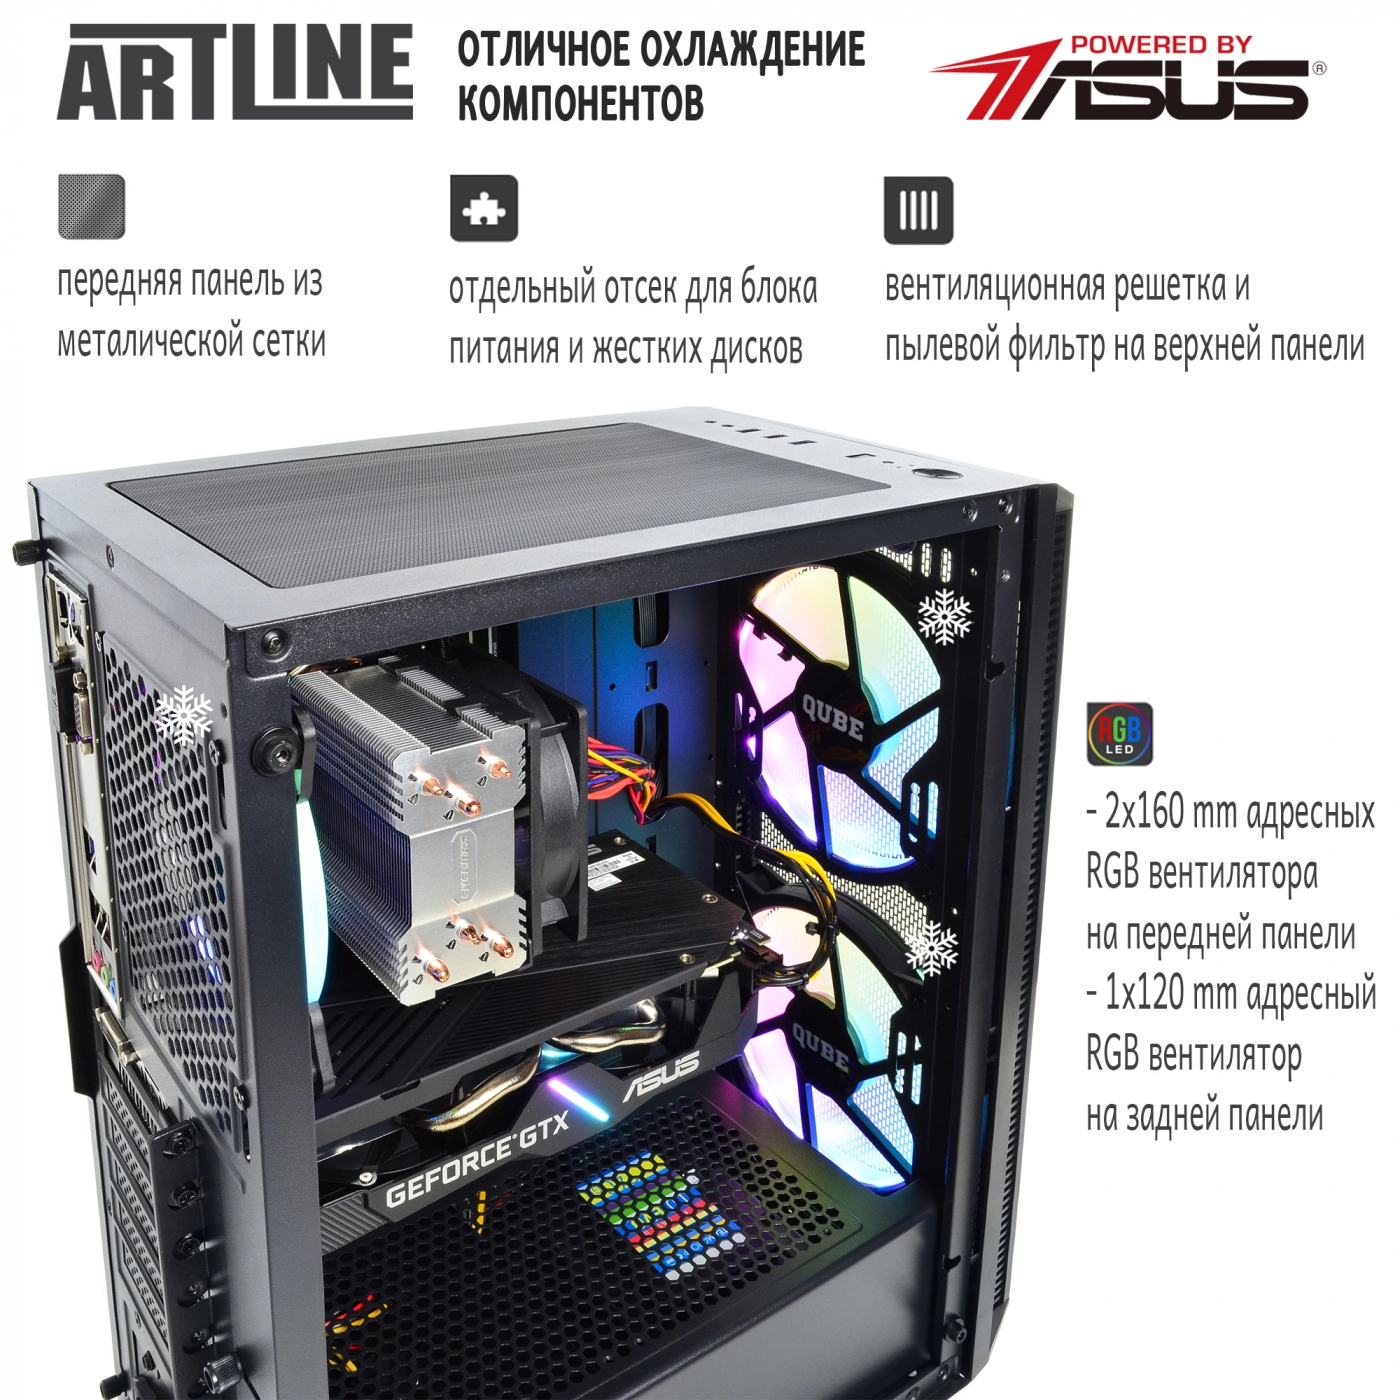 Купить Компьютер ARTLINE Gaming X48v09 - фото 2